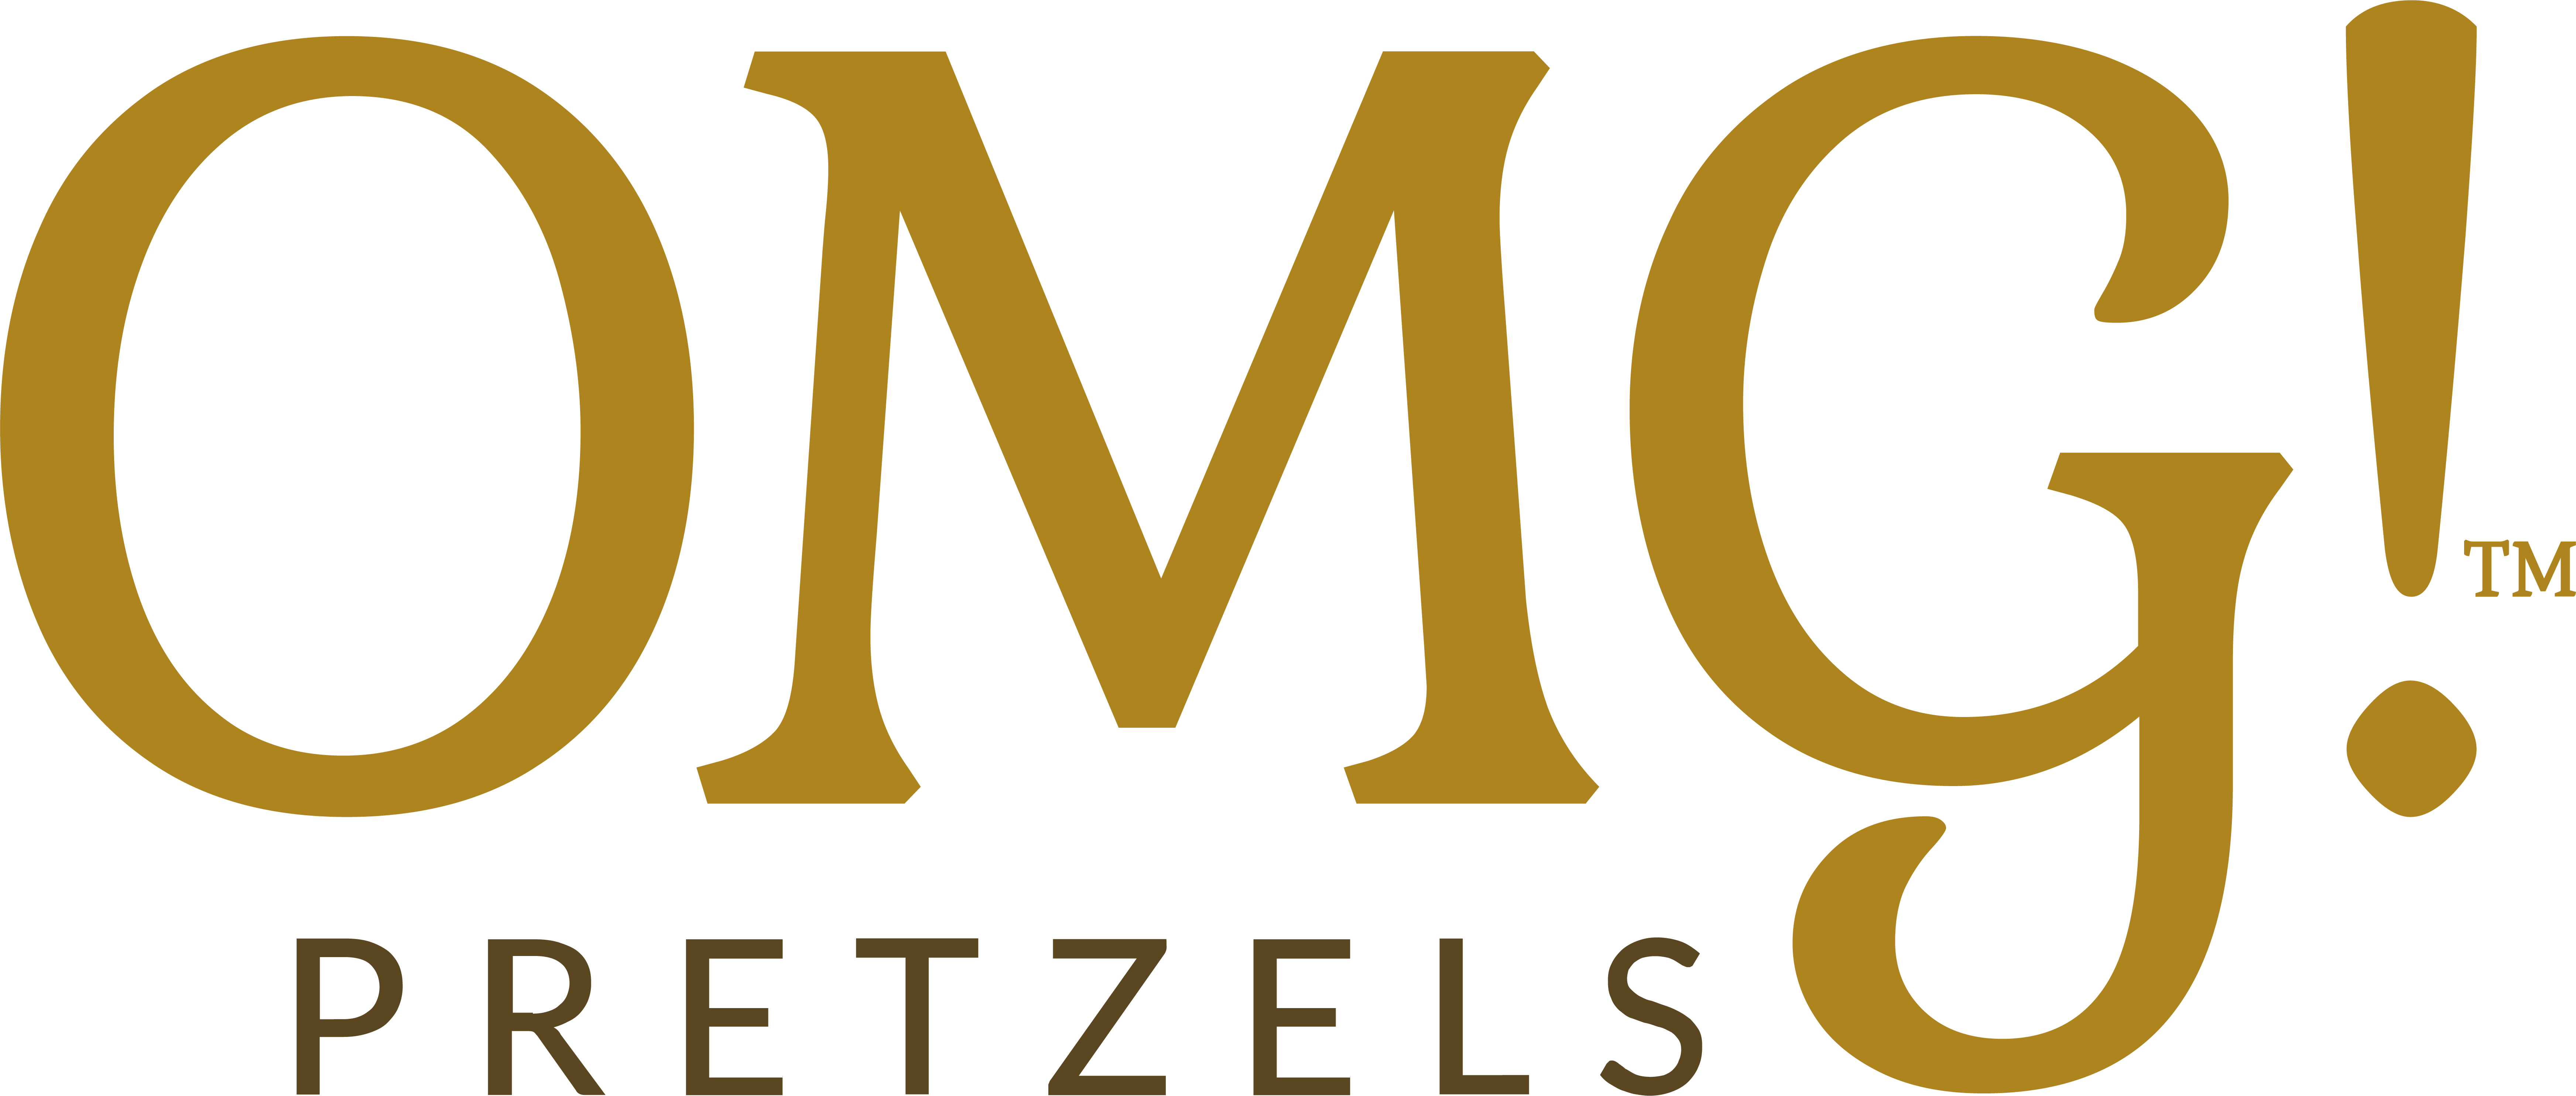 omg pretzels logo